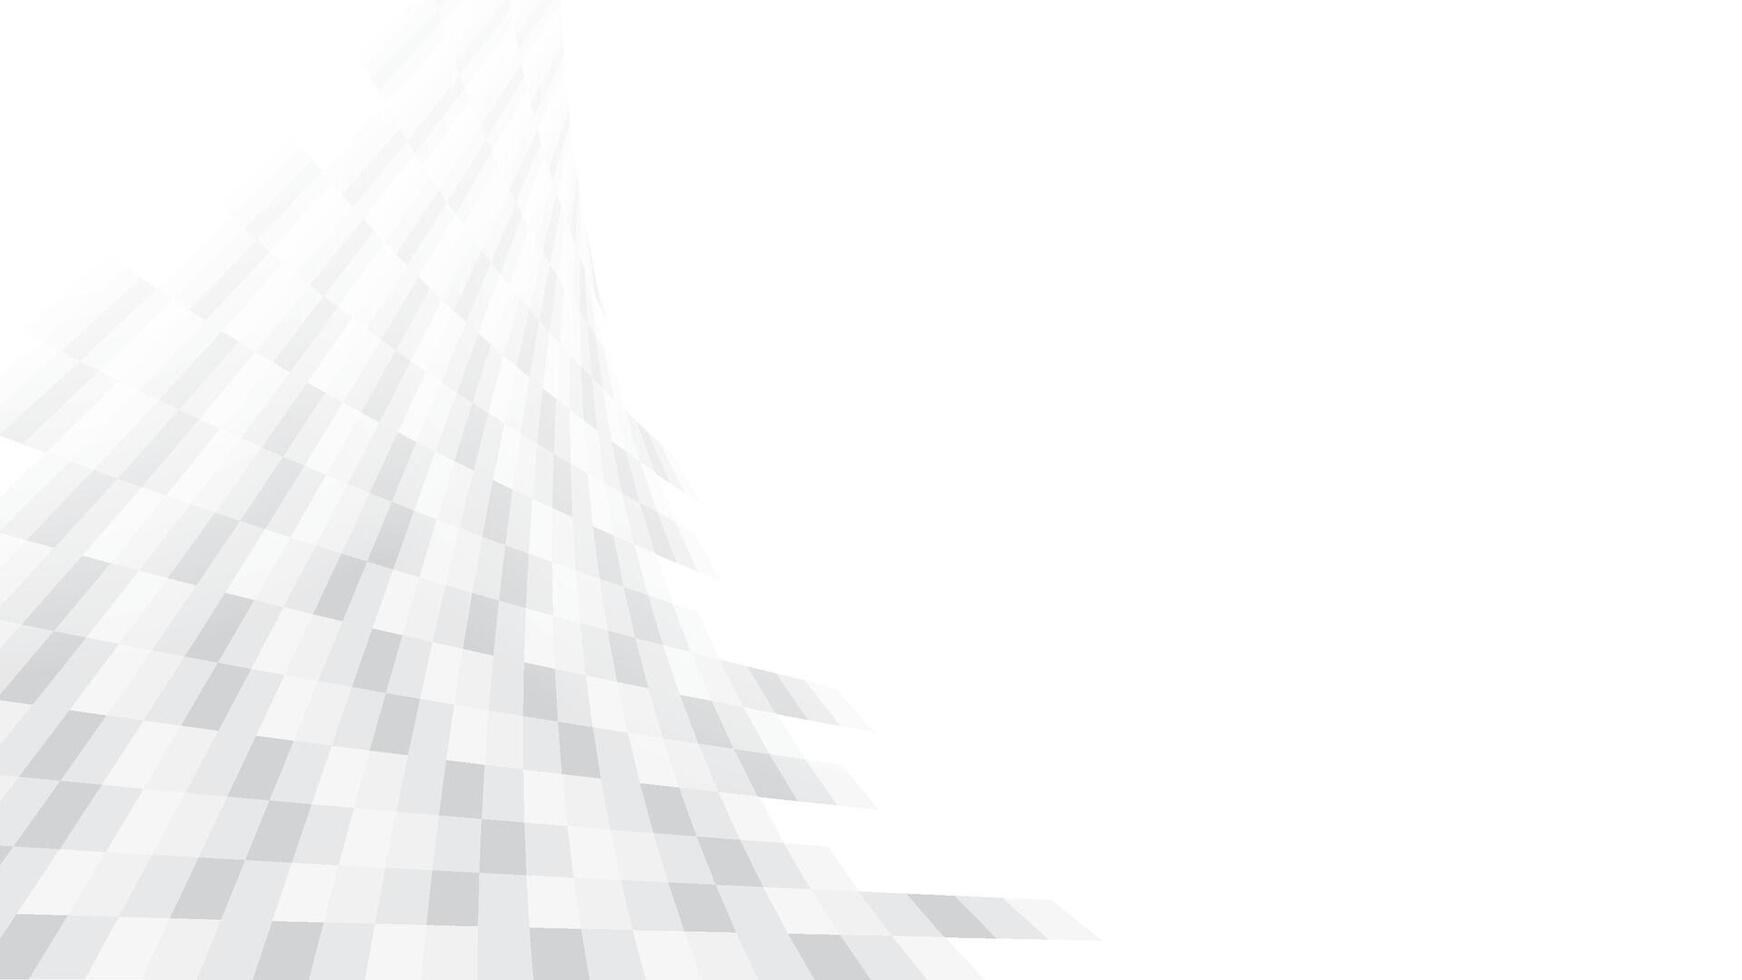 abstract meetkundig wit en grijs kleur achtergrond met rechthoek patroon. vector illustratie.